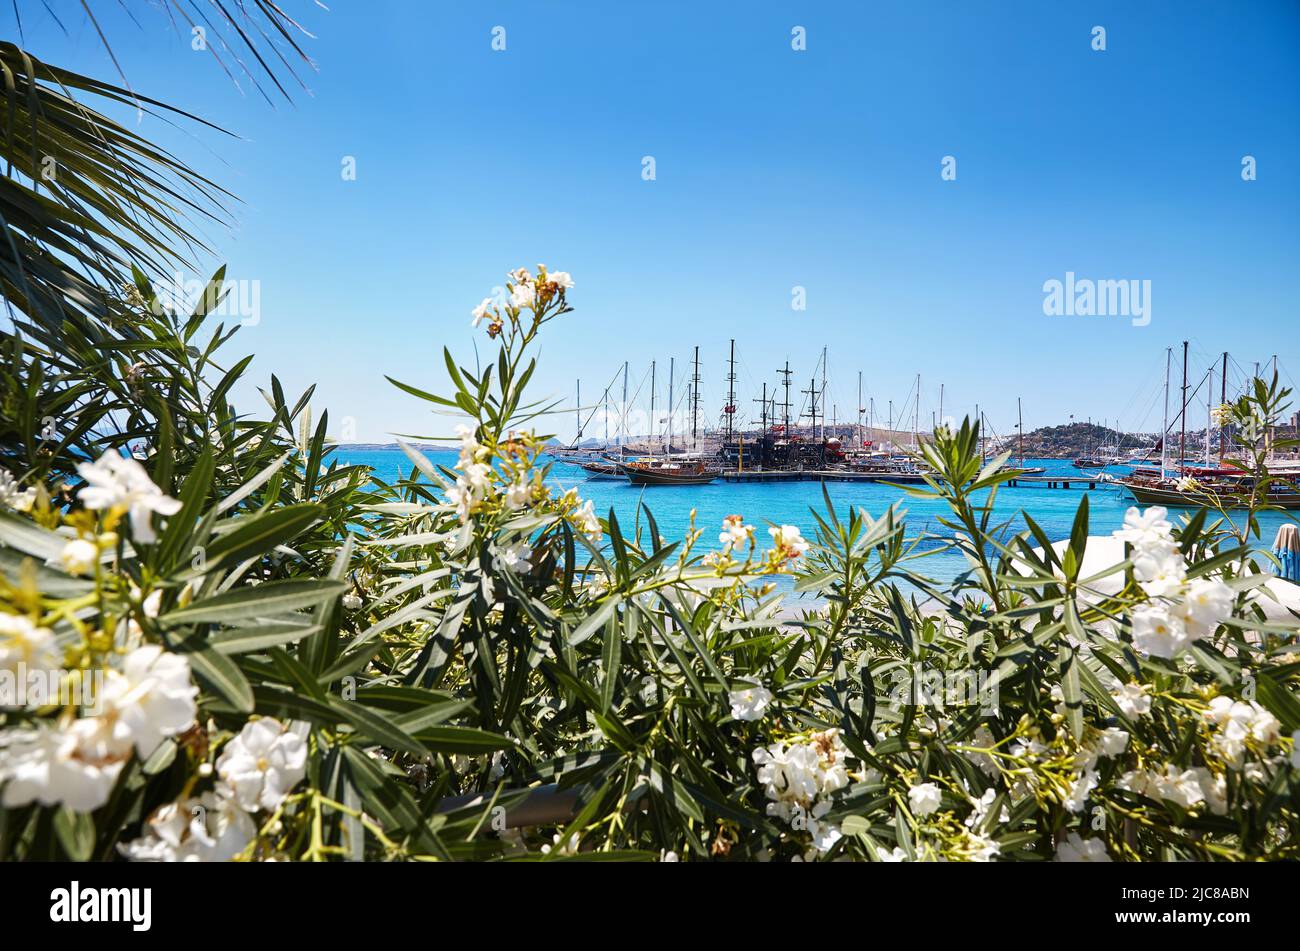 Vista de la playa de Bodrum desde el Paseo Marítimo. Barcos de vela, yates en el mar Egeo con flores blancas en primer plano en Bodrum ciudad portuaria de Turquía Foto de stock